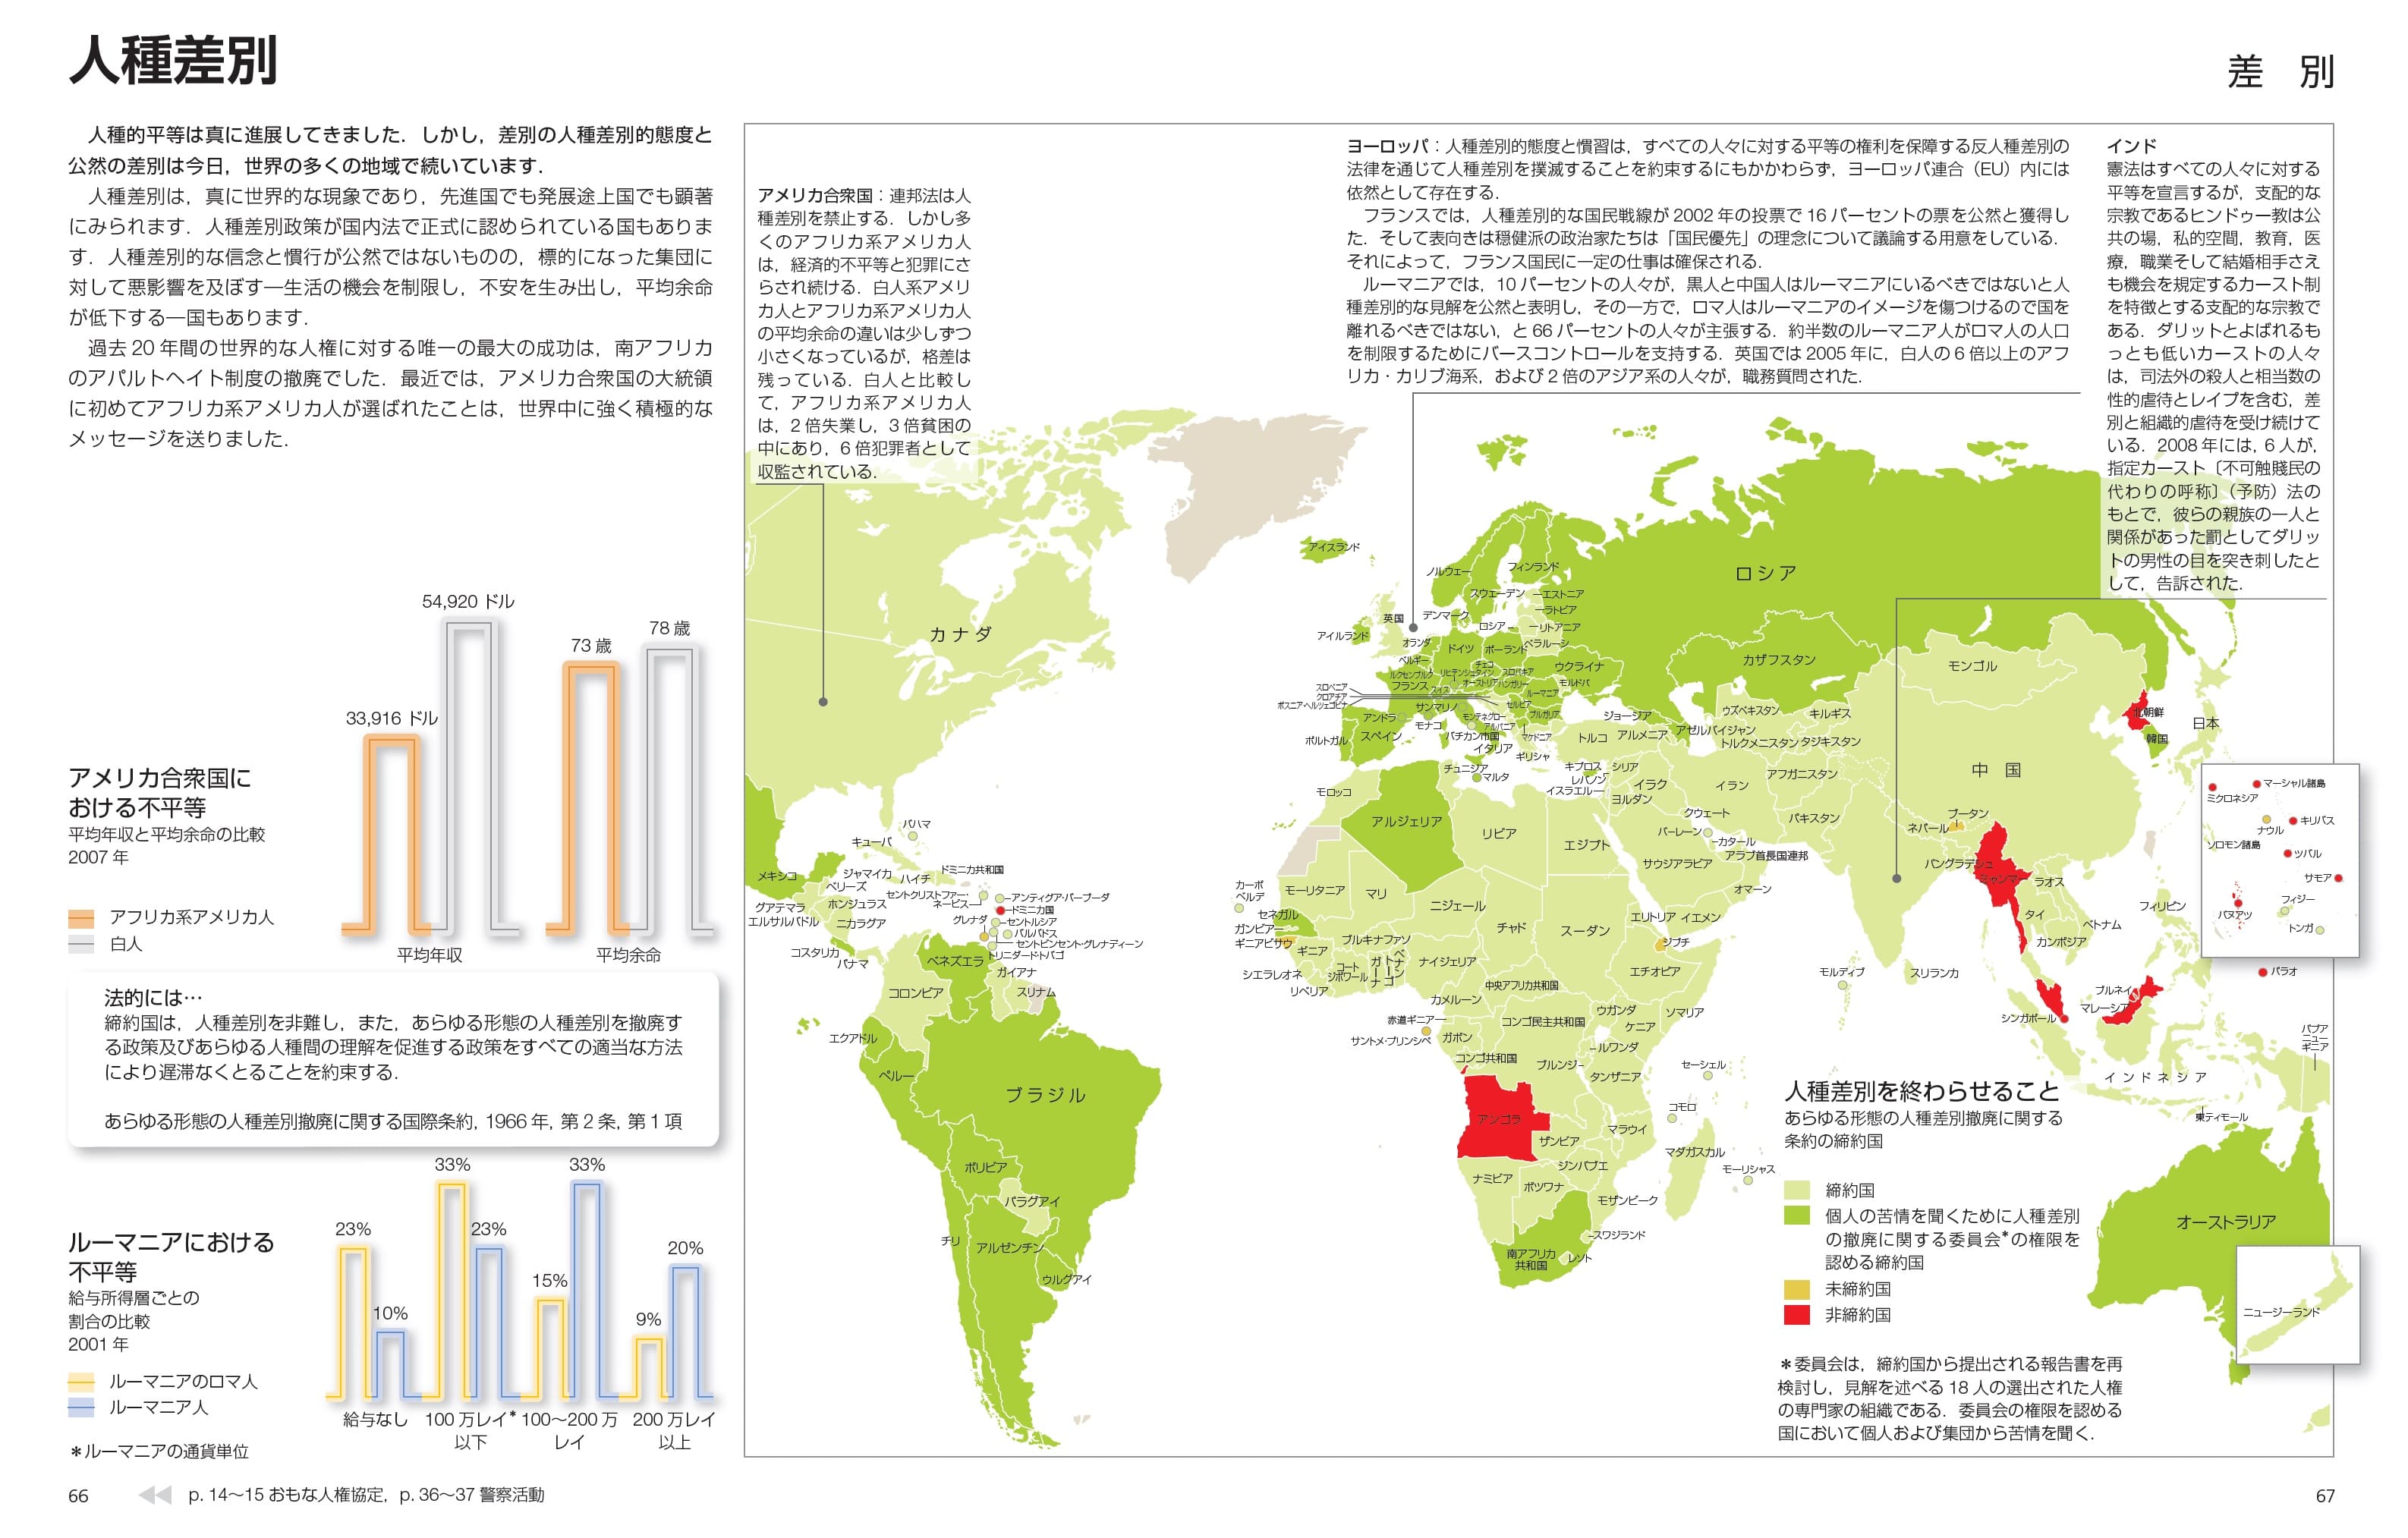 データに基づき色付けされた地図で世界中の様々な事情がわかる 世界地図シリーズ 丸善出版 理工 医学 人文社会科学の専門書出版社